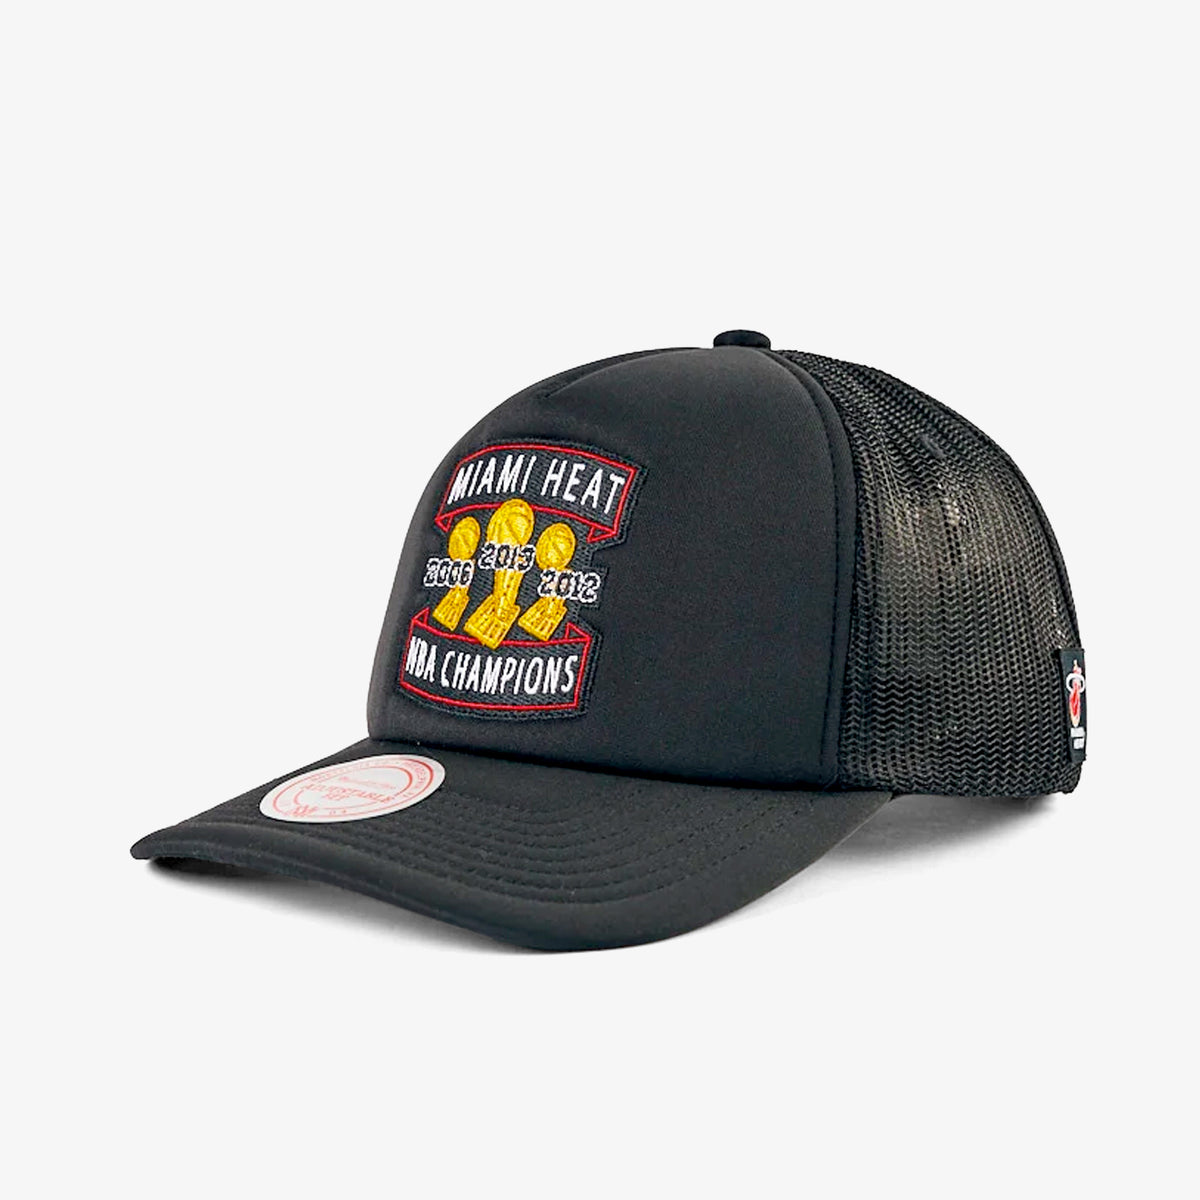 Miami Heat 3 Times NBA Champions Trucker Hat - Black